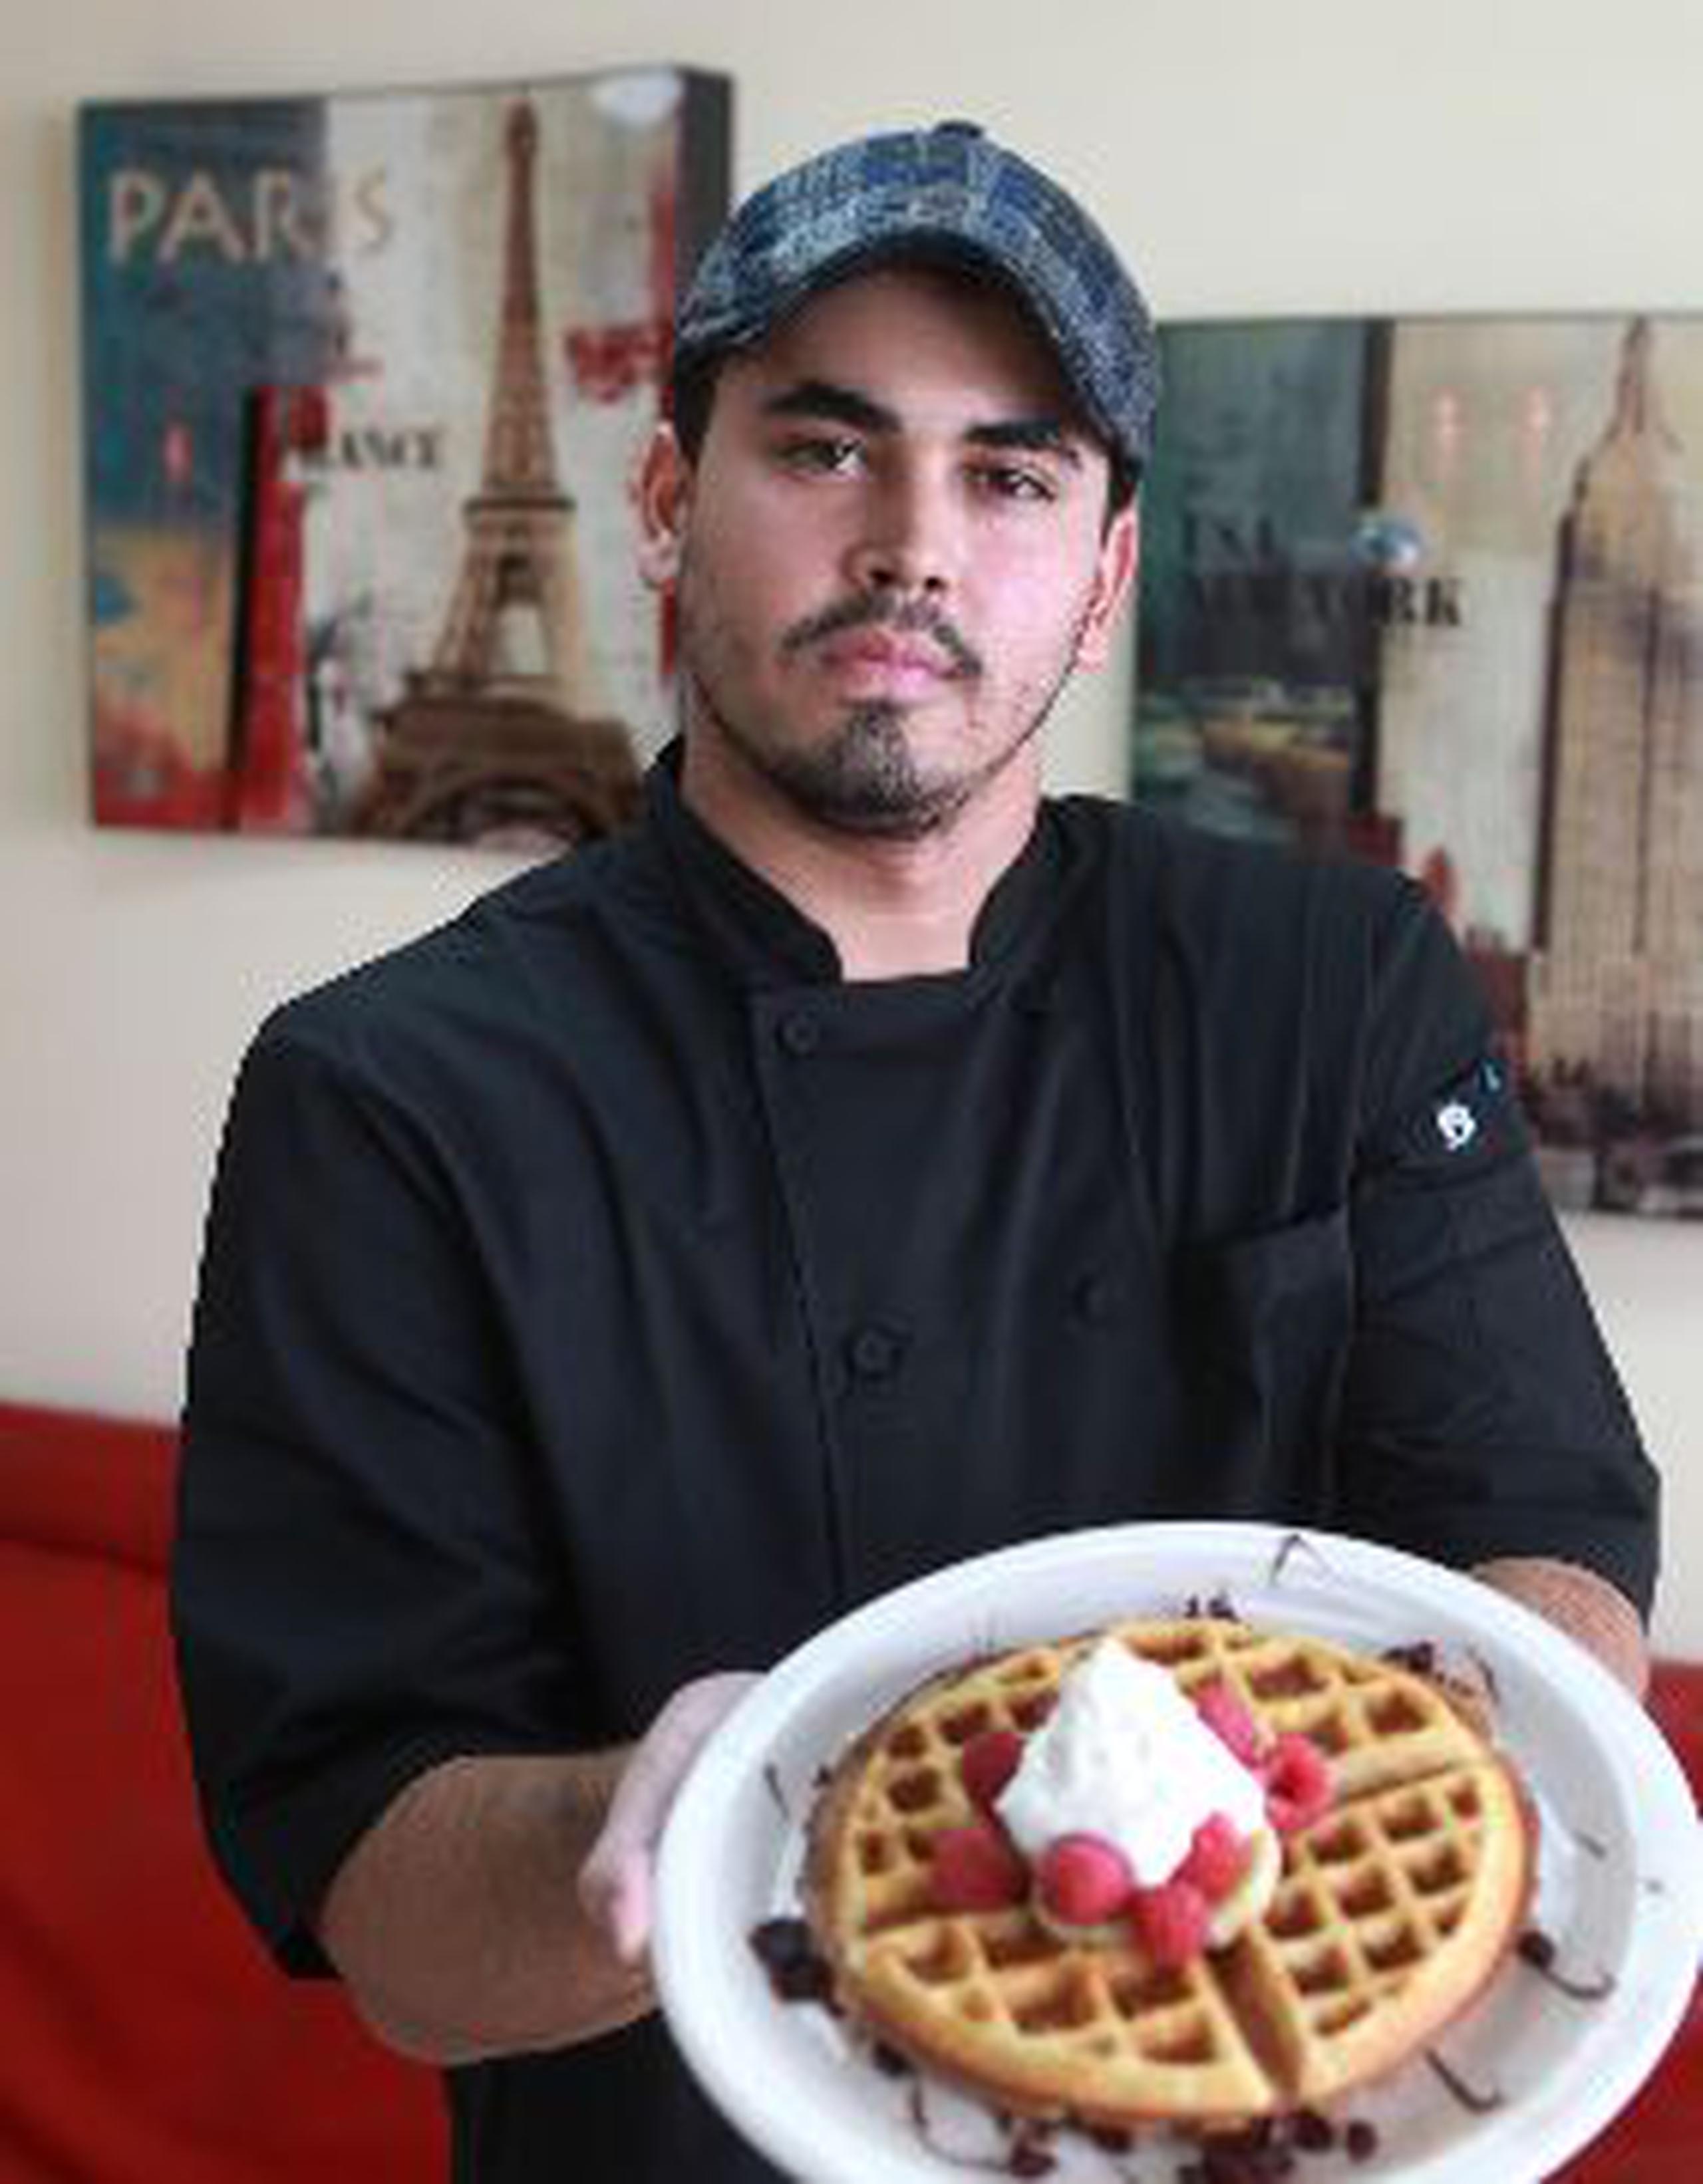  Los domingos, para el desayuno, el chef Jan Karlo Ruiz, propietario de Bistro Café, prepara pancakes y waffles.    &nbsp;<font color="yellow">(vanessa.serra@gfrmedia.com)</font>